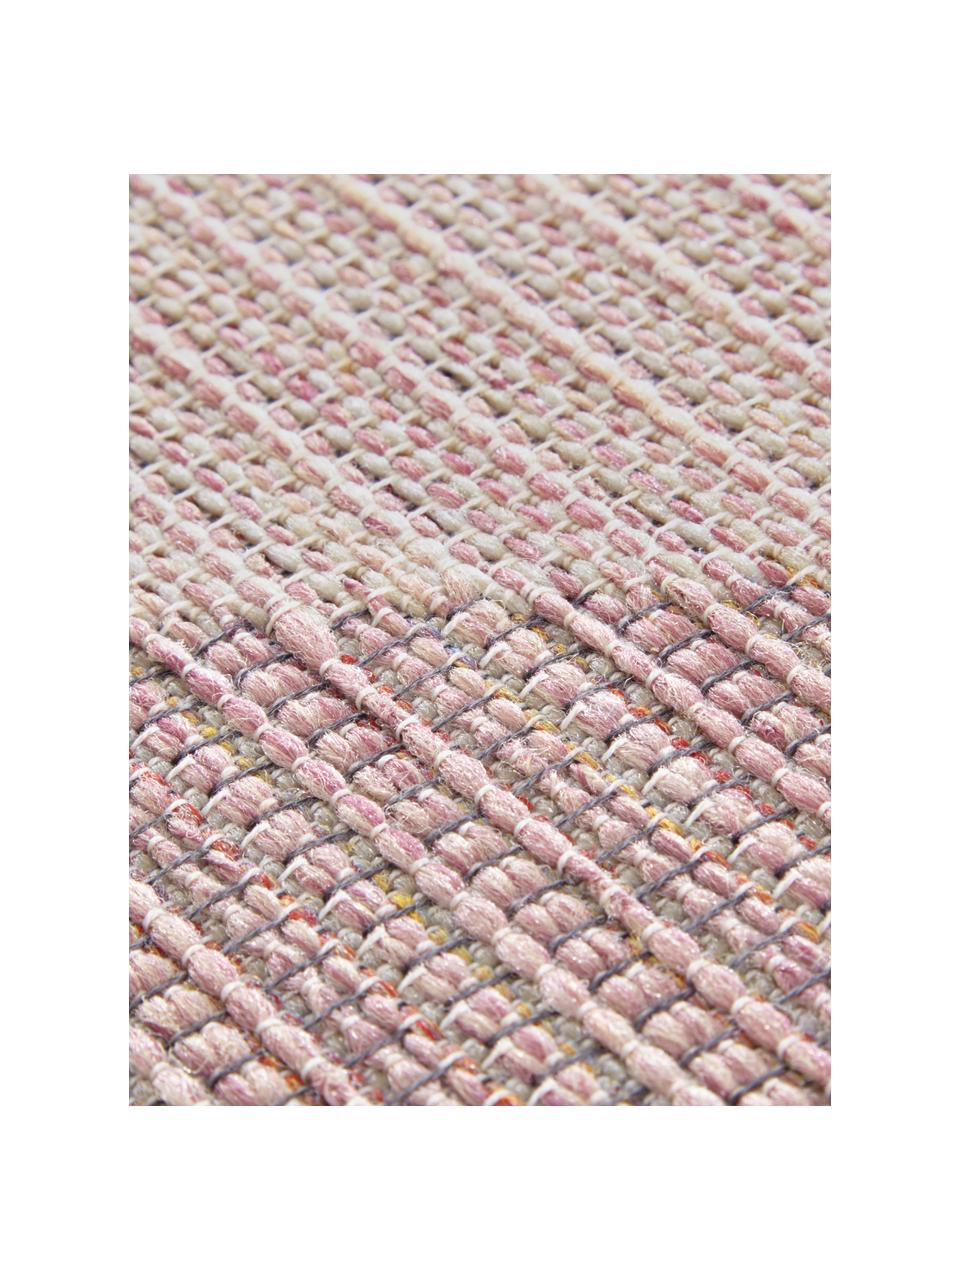 Tappeto da interno-esterno Sevres, 100% polipropilene, Tonalità rosa, tonalità beige, Larg. 200 x Lung. 290 cm (taglia L)